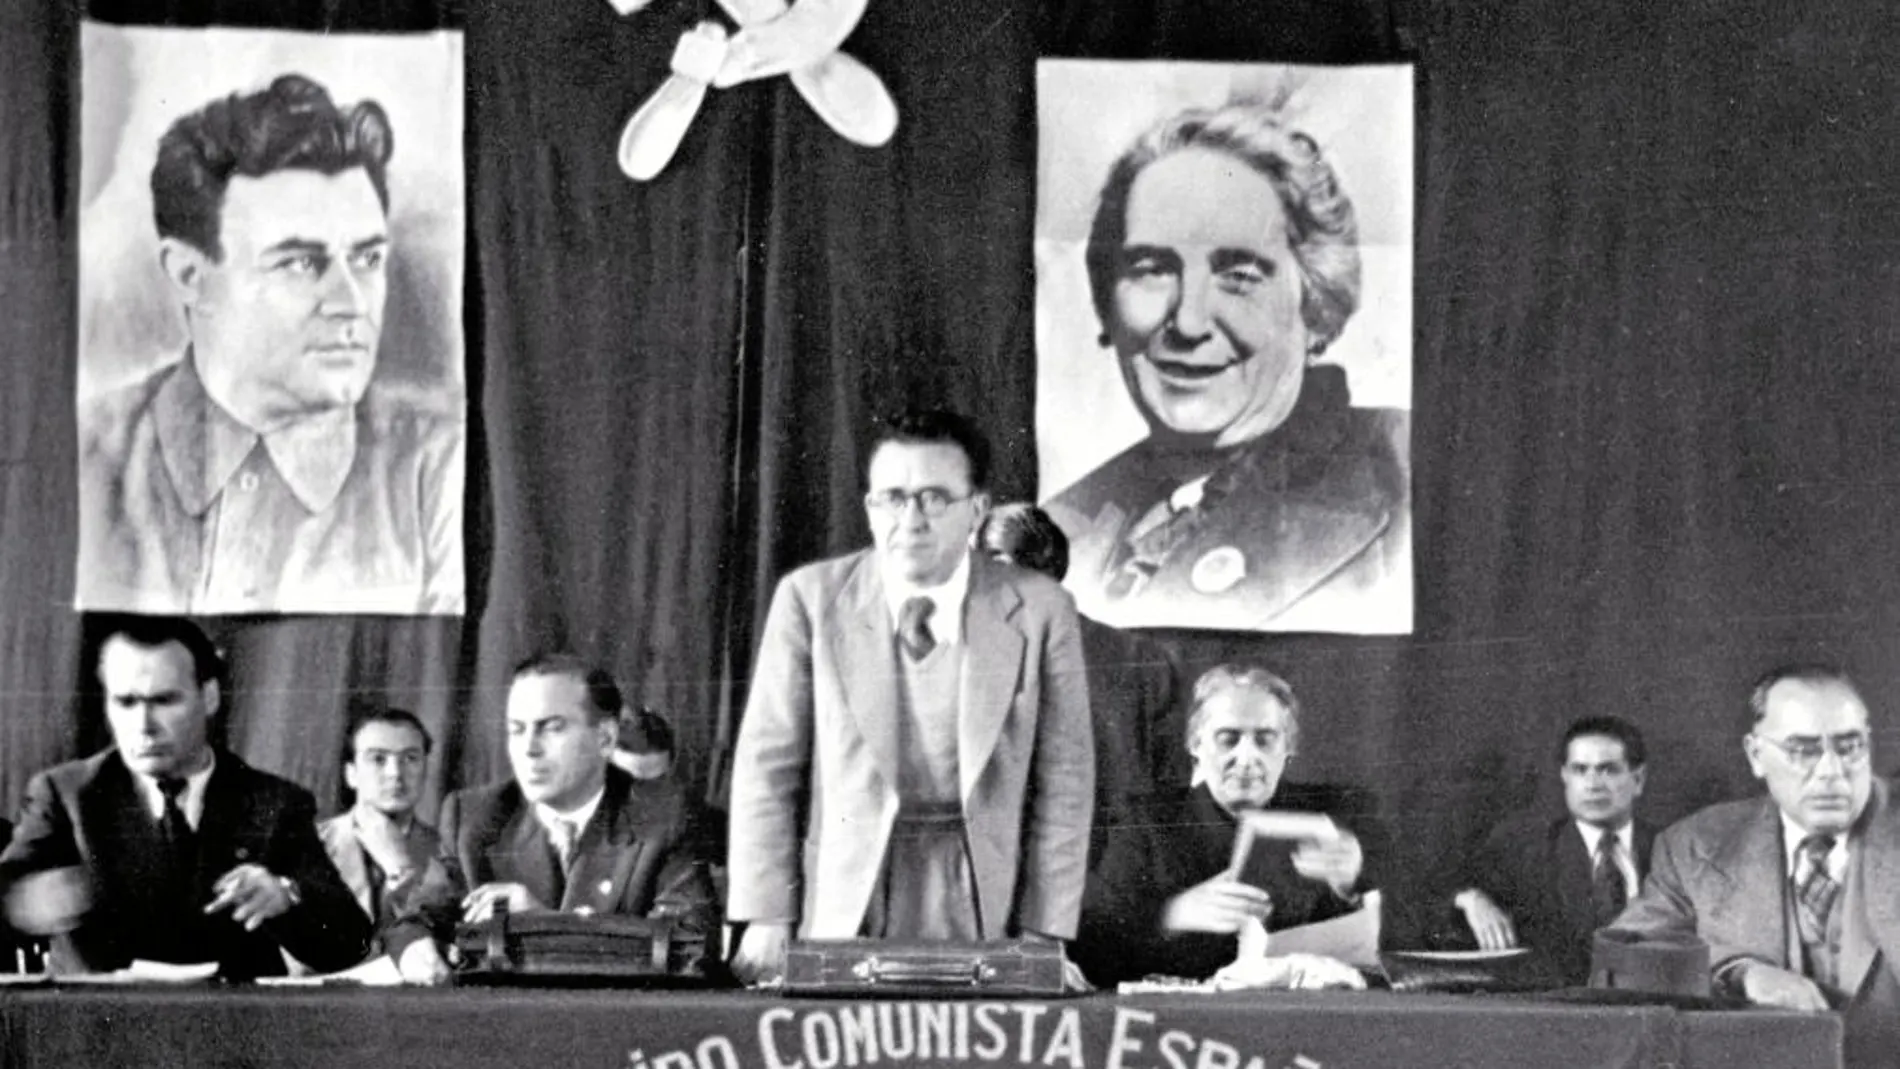 De izda. a dcha., Enrique Líster, Francisco Antón, Santiago Carrillo, Dolores Ibárruri y Joan Comorera